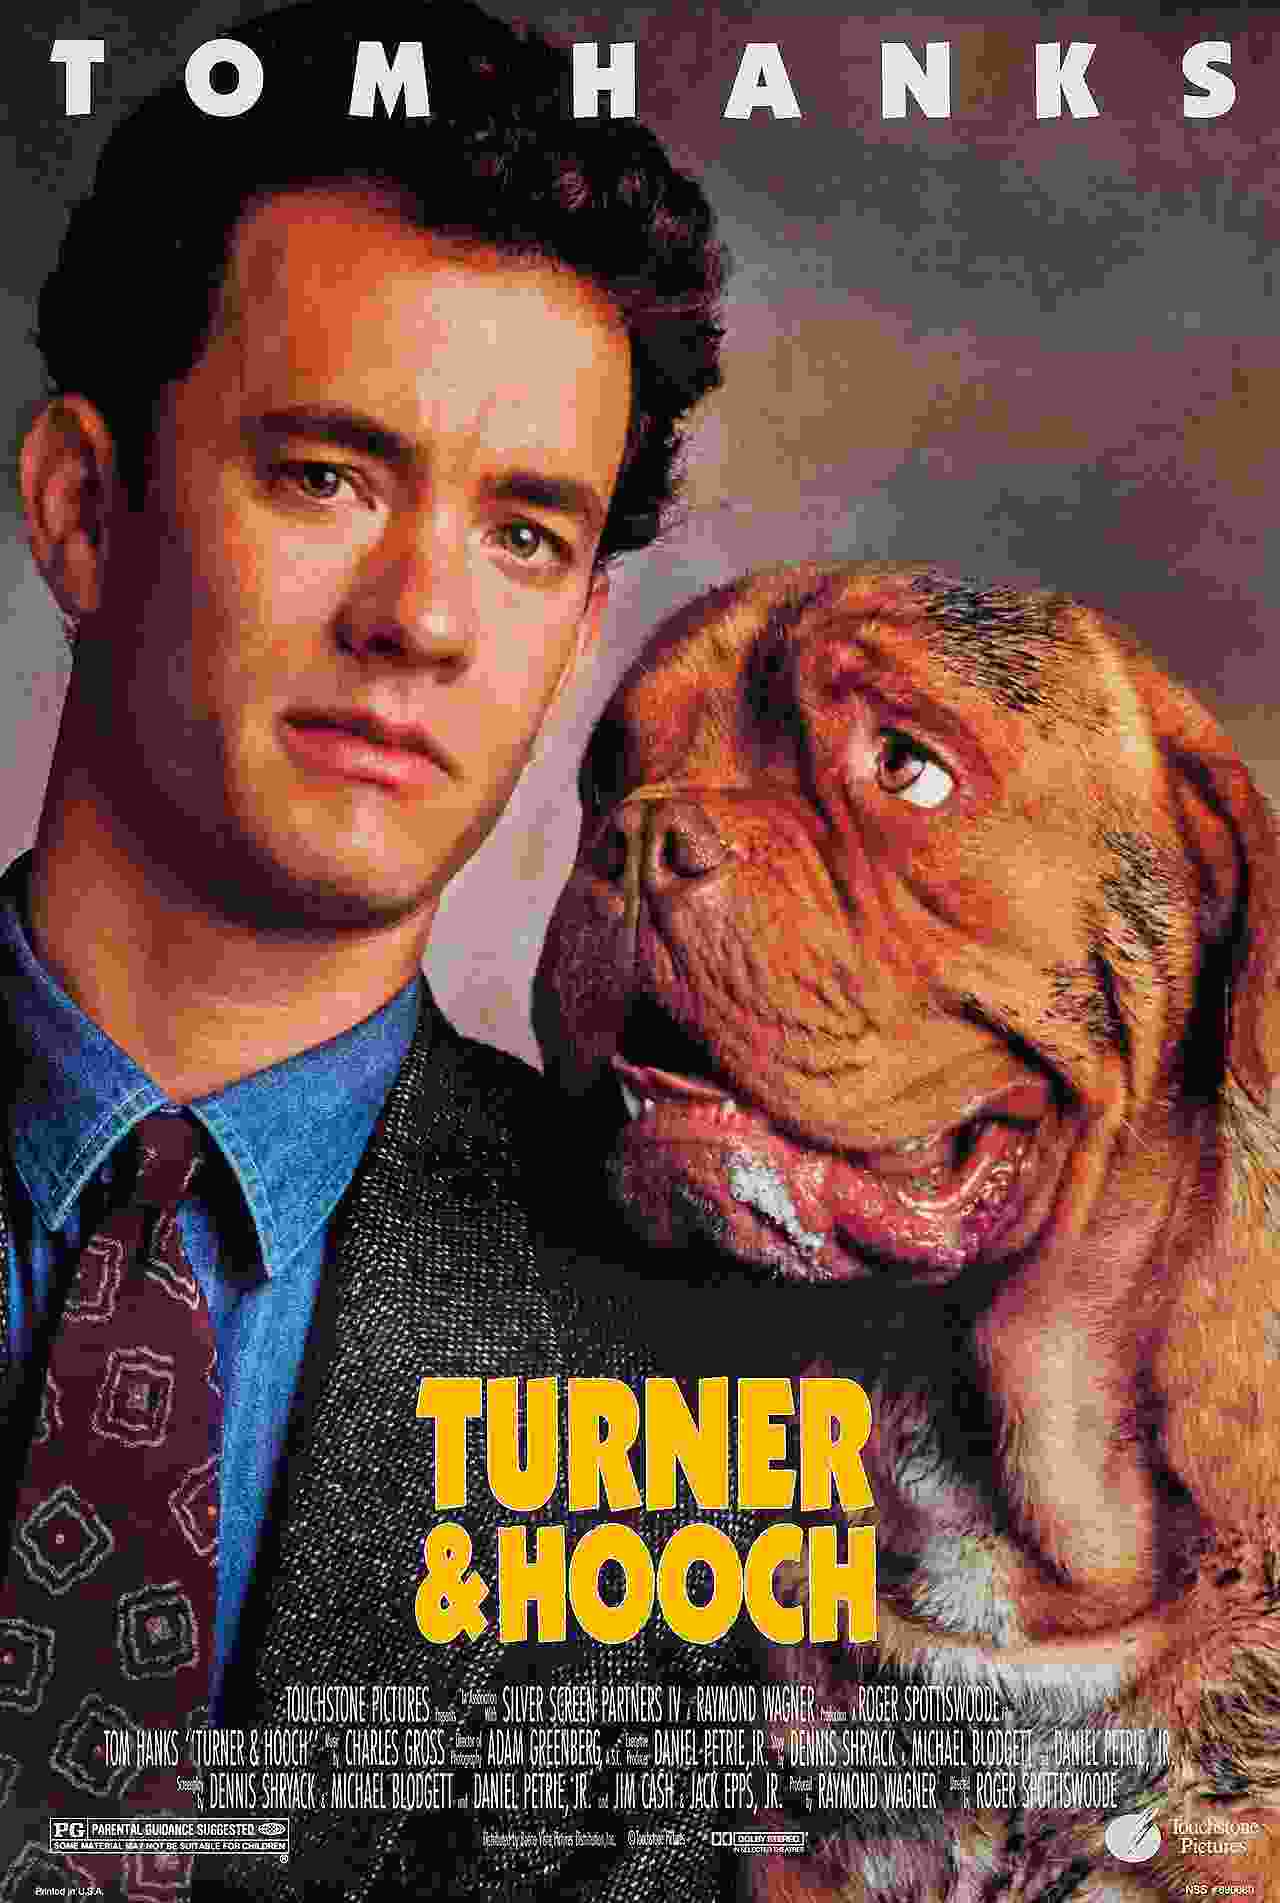 Turner & Hooch (1989) vj emmy Tom Hanks